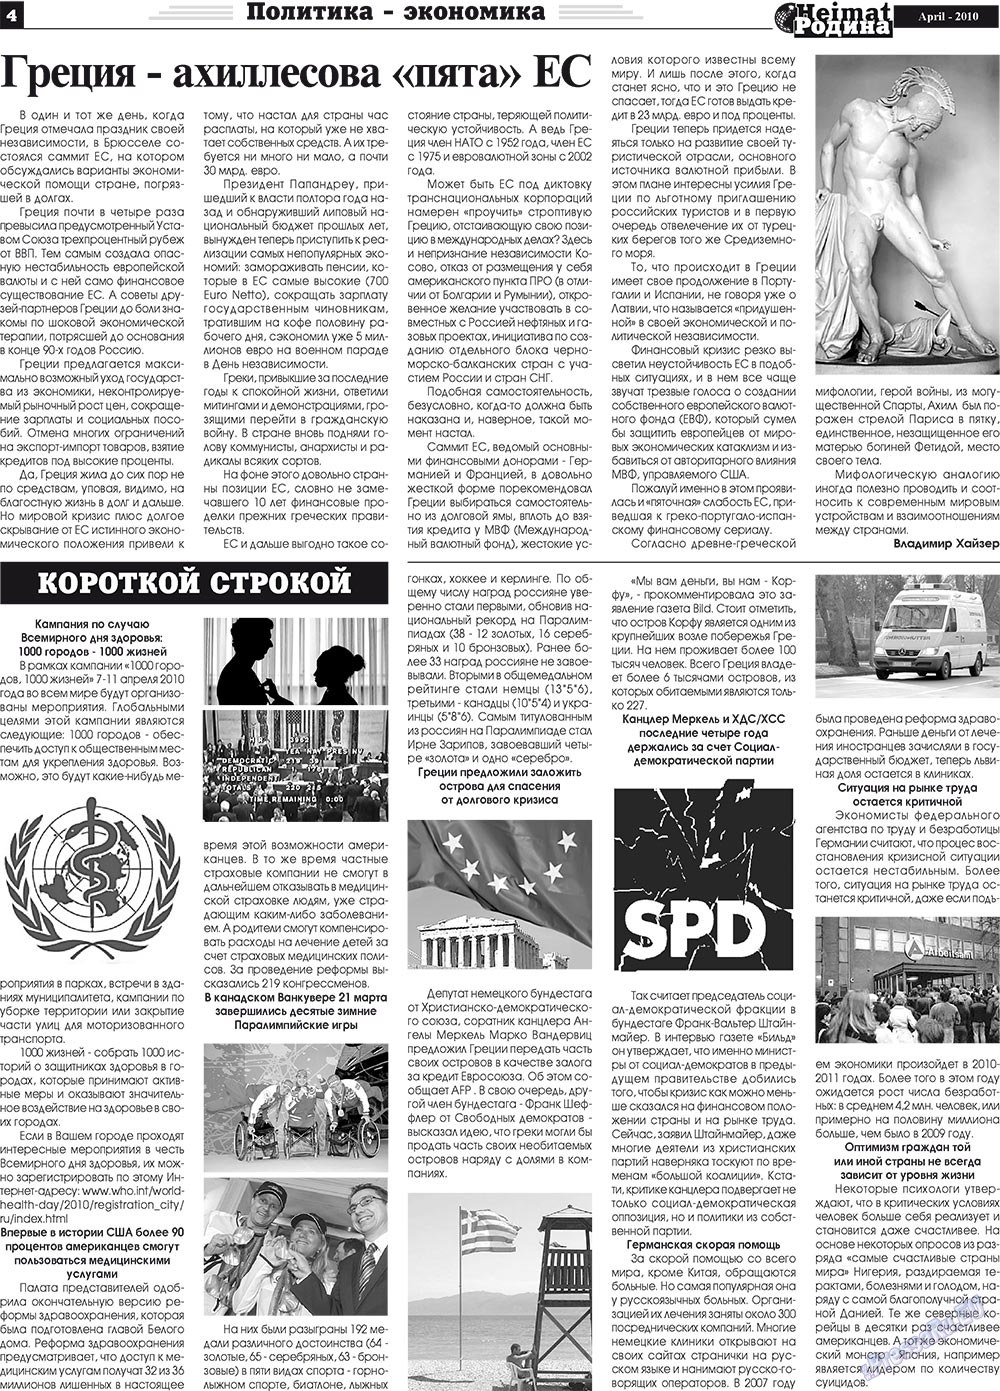 Heimat-Родина (газета). 2010 год, номер 4, стр. 4